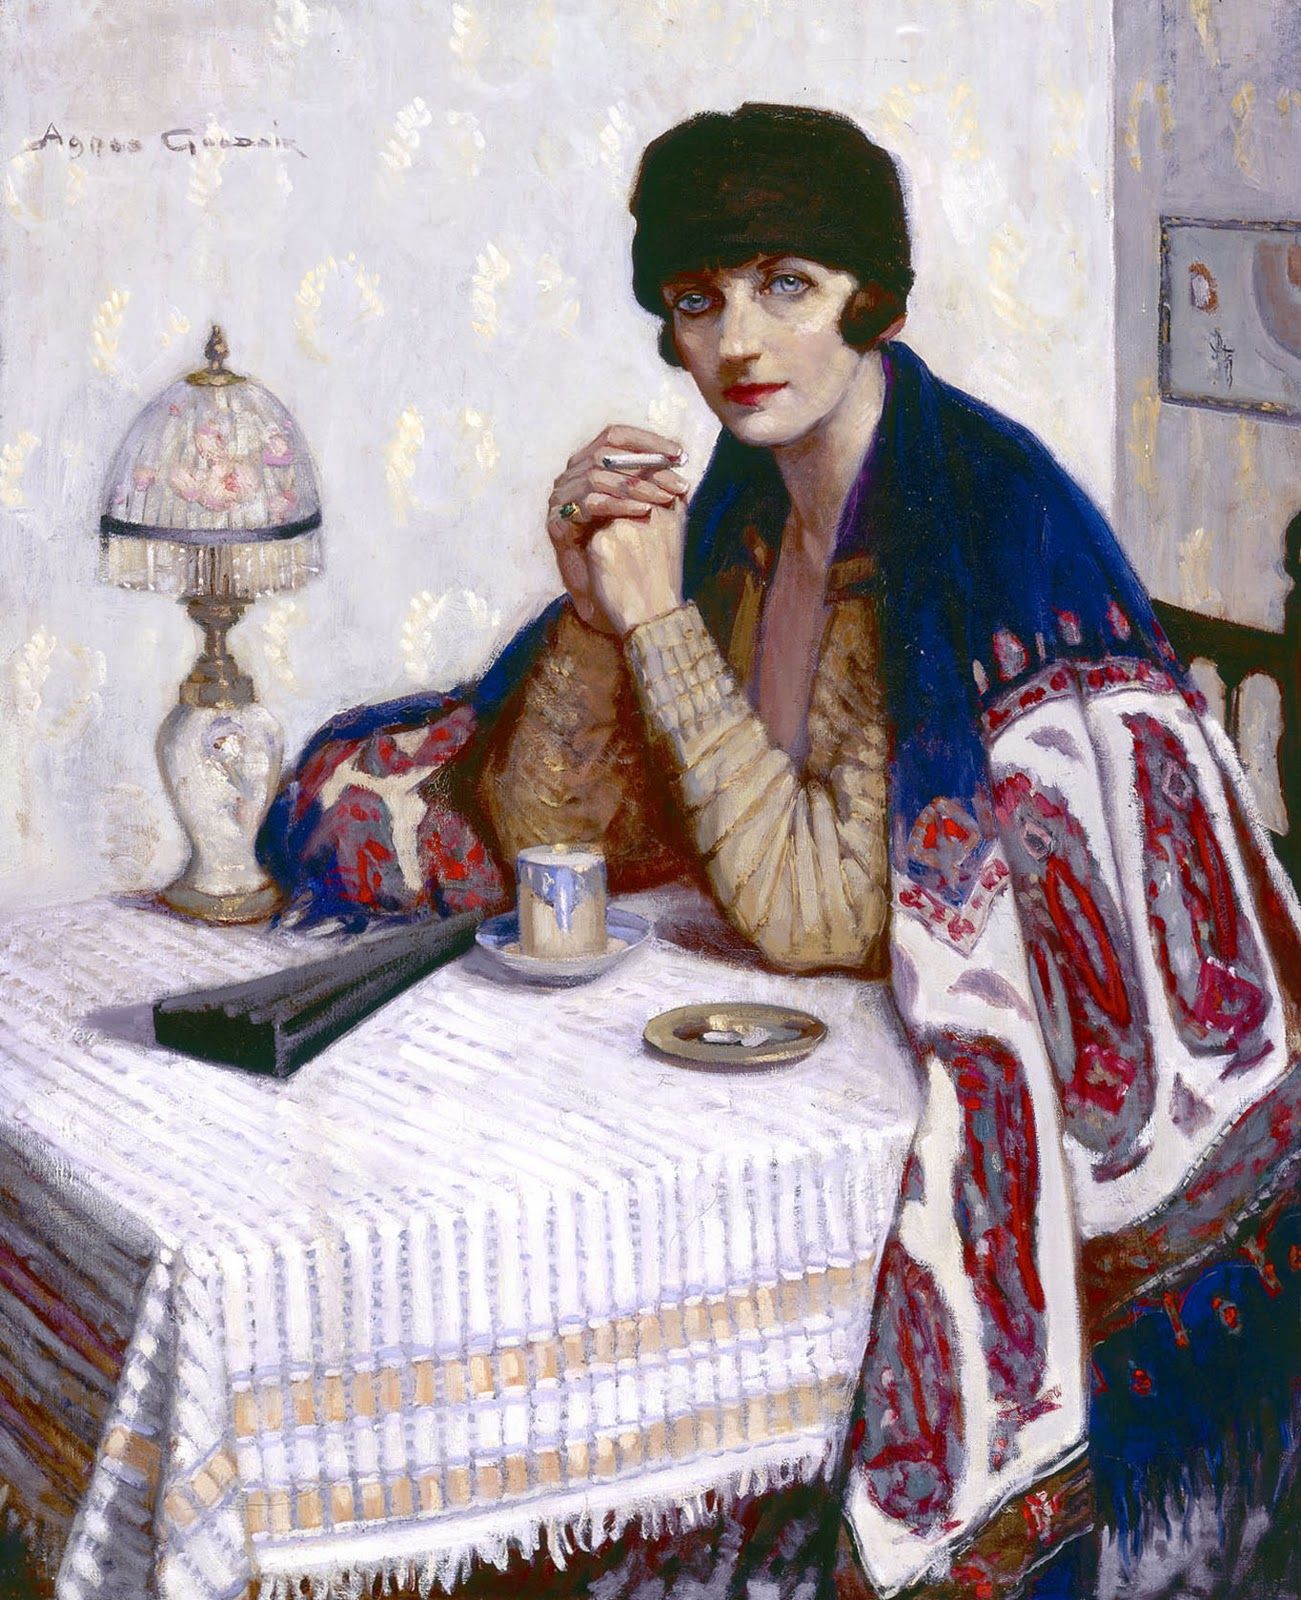 タバコを吸う女性 by Agnes Goodsir - 1925年 - 100 x 81cm 